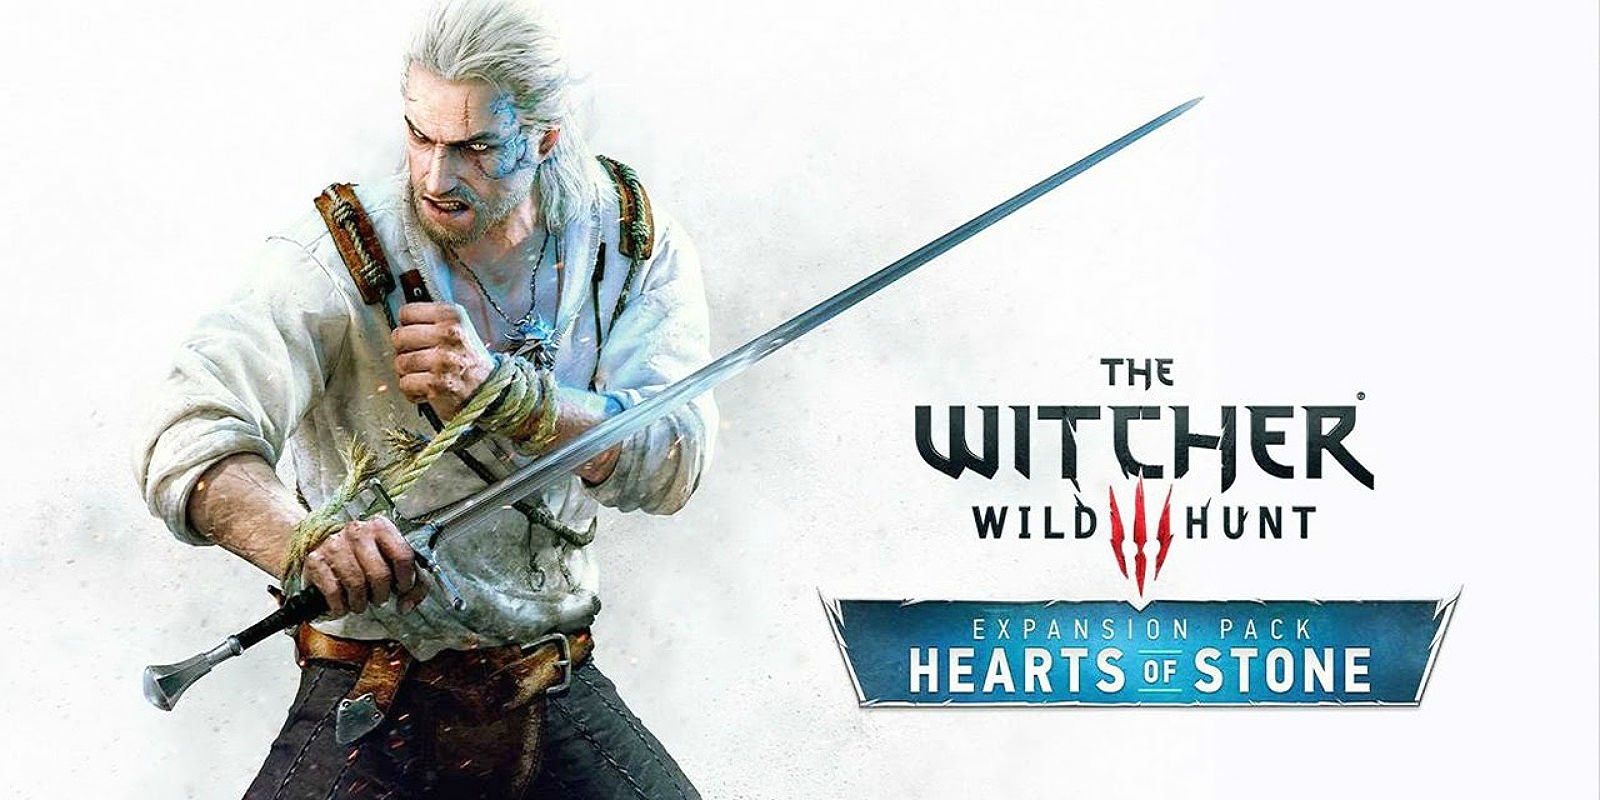 Arte promocional de Geralt e texto descrevendo o pacote de expansão The Witcher 3 Wild Hunt Hearts of Stone